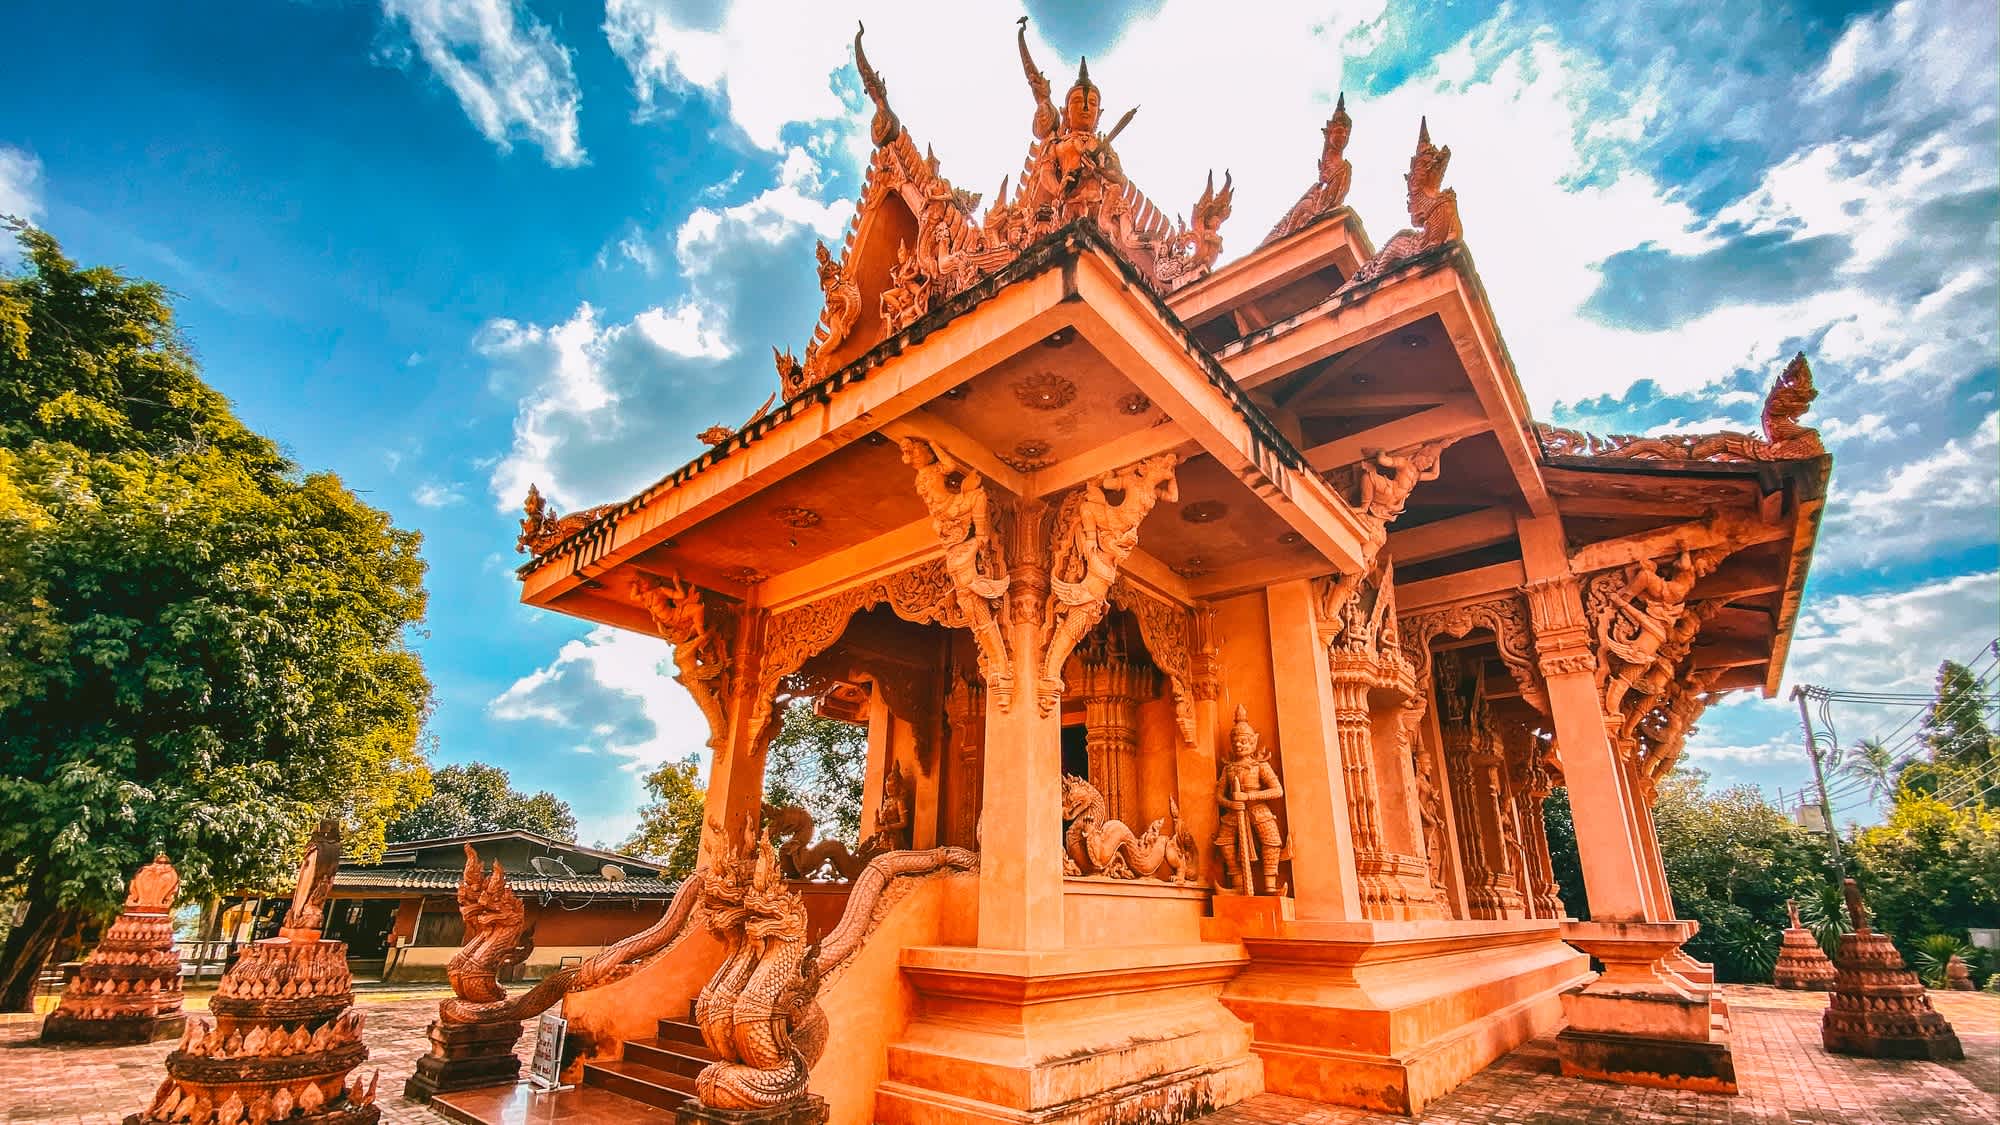 Wat Ratchathammaram in Koh Samui, Thailand

